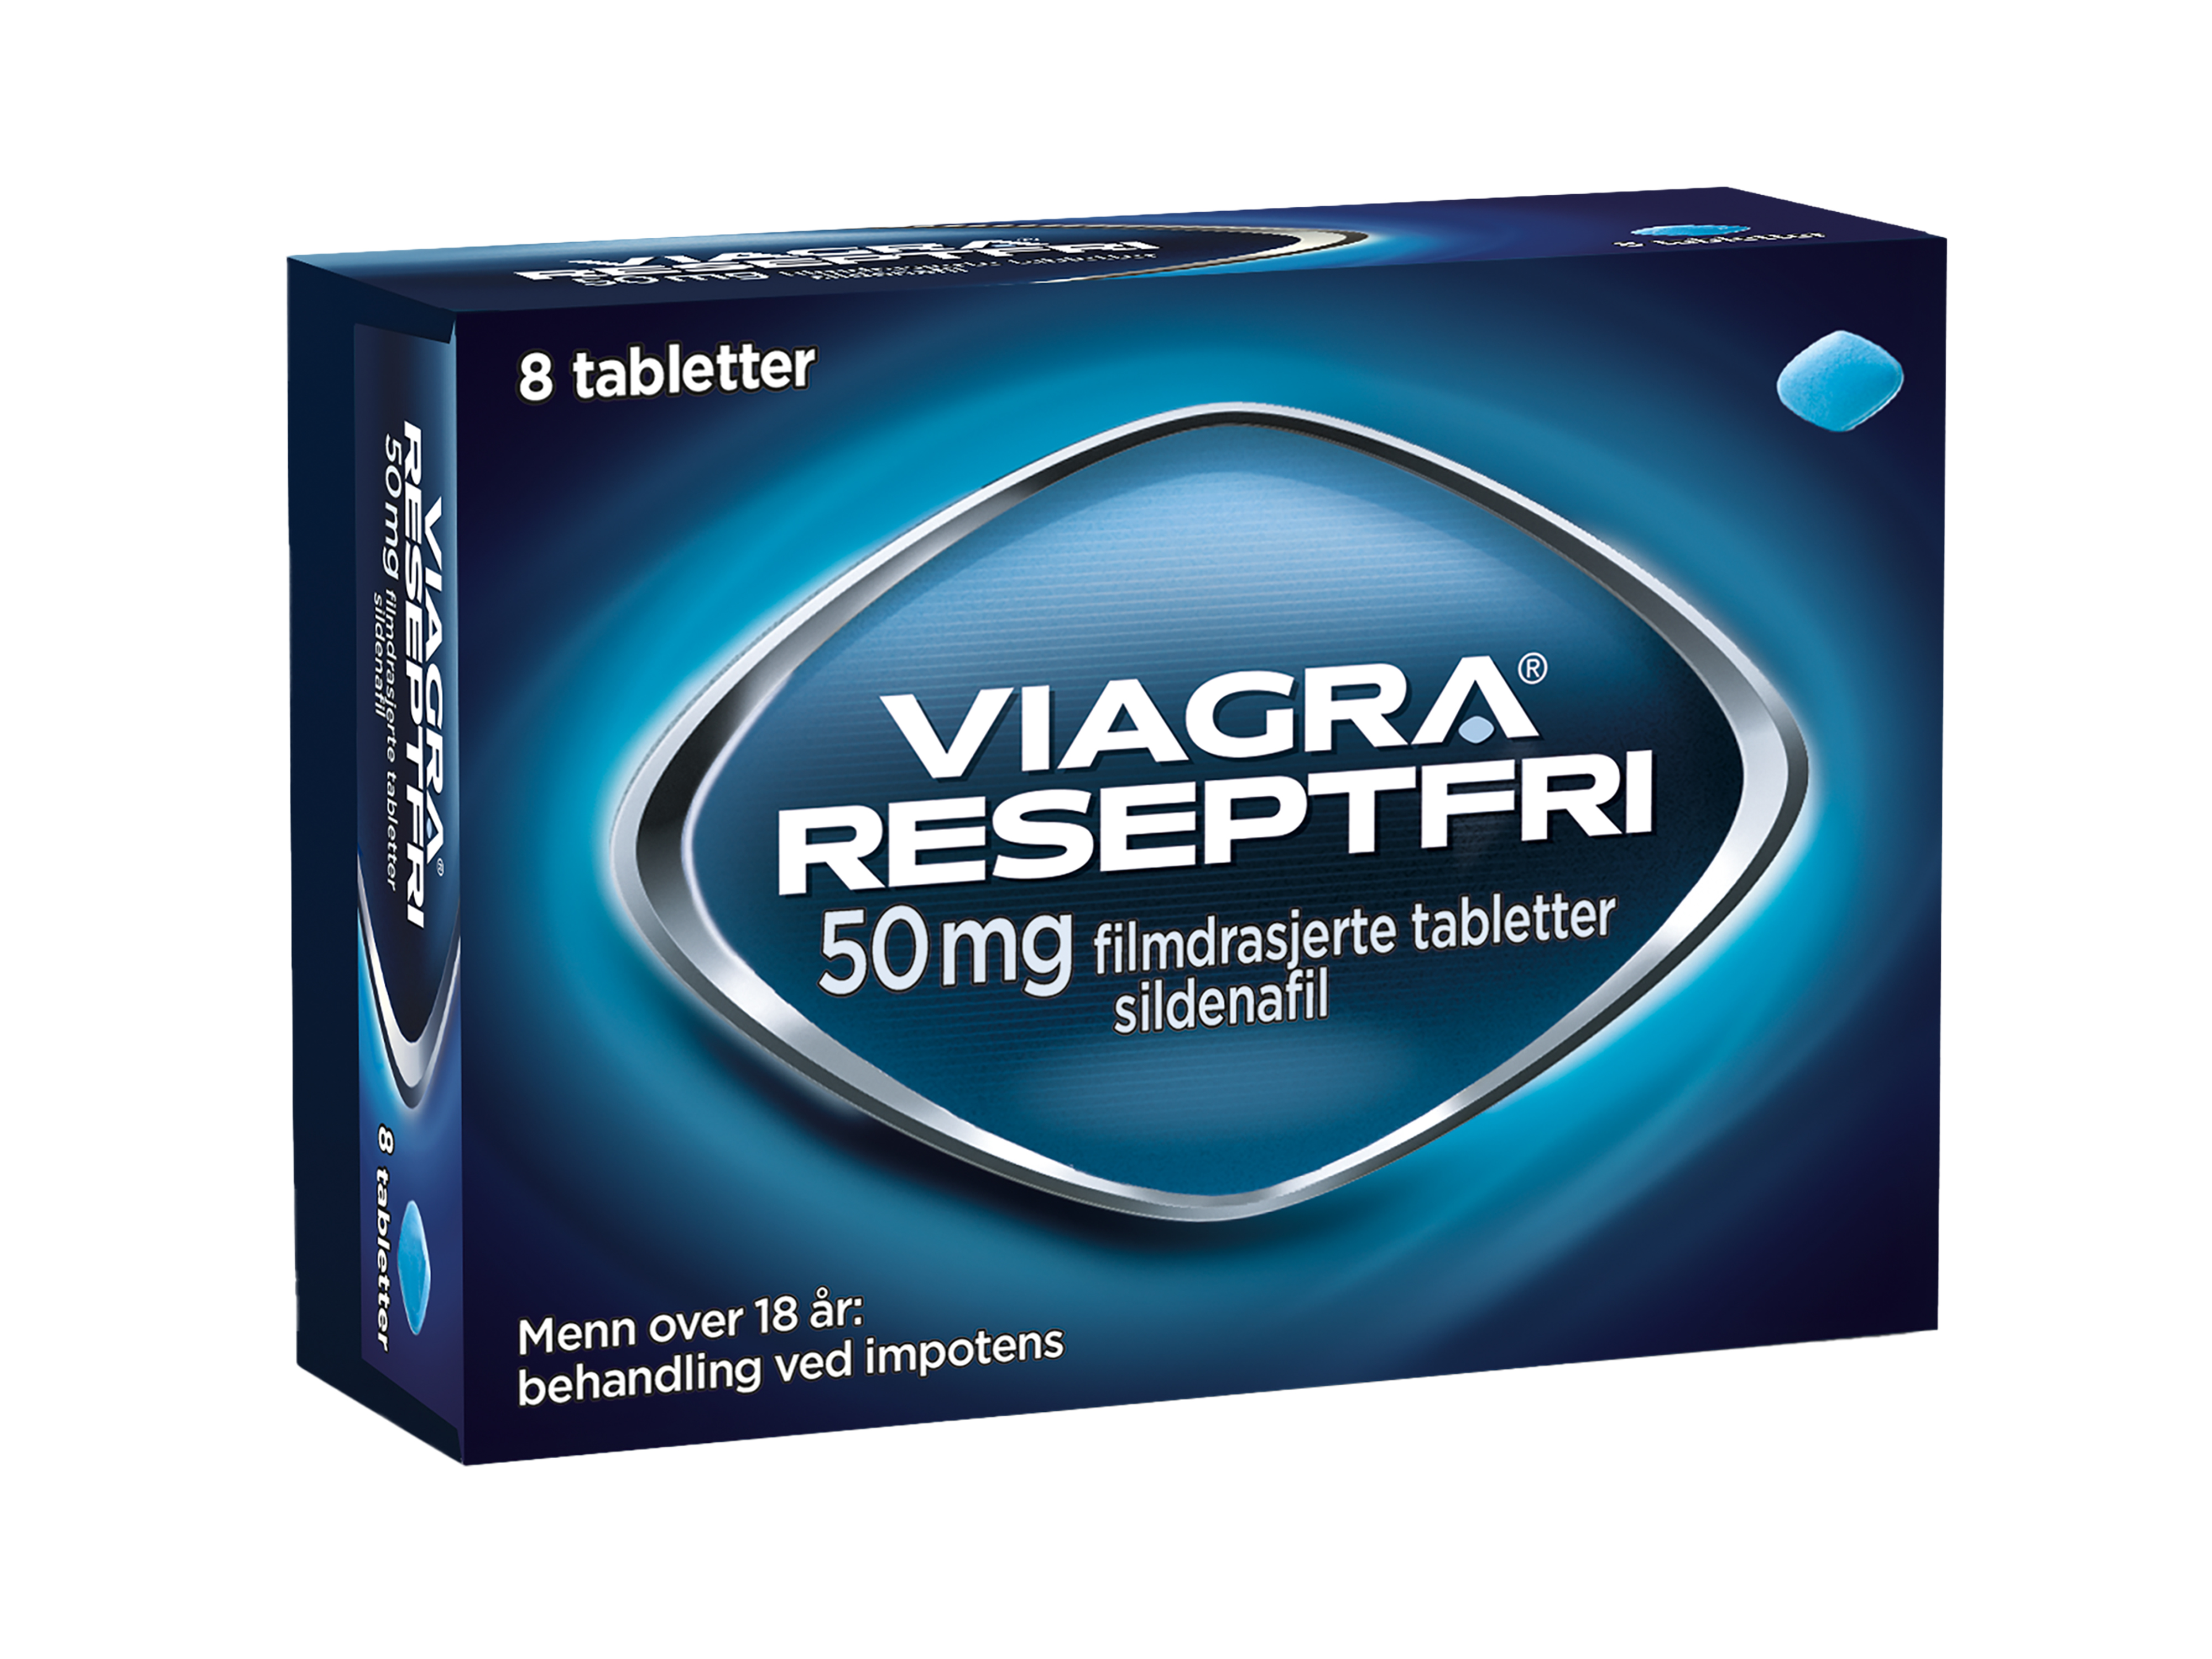 Viagra Reseptfri® Viagra Reseptfri Tablett 50mg, 8 stk.